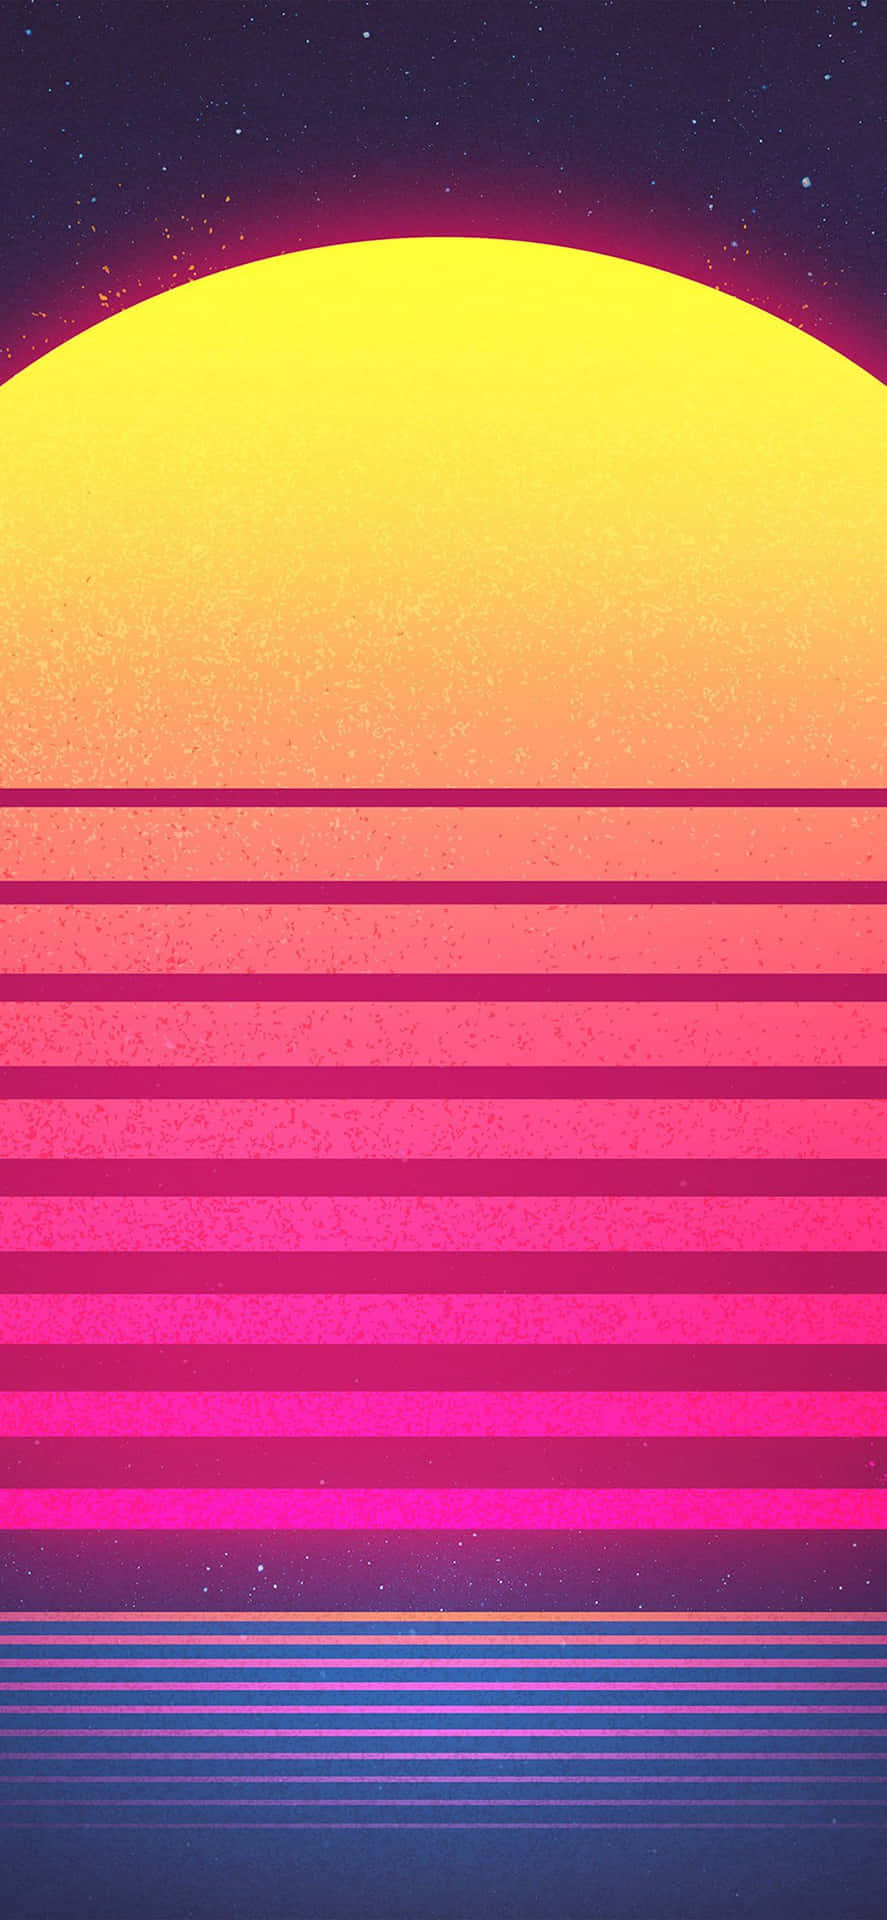 Einretro-sonnenuntergang Mit Einem Rosa Und Gelben Hintergrund. Wallpaper